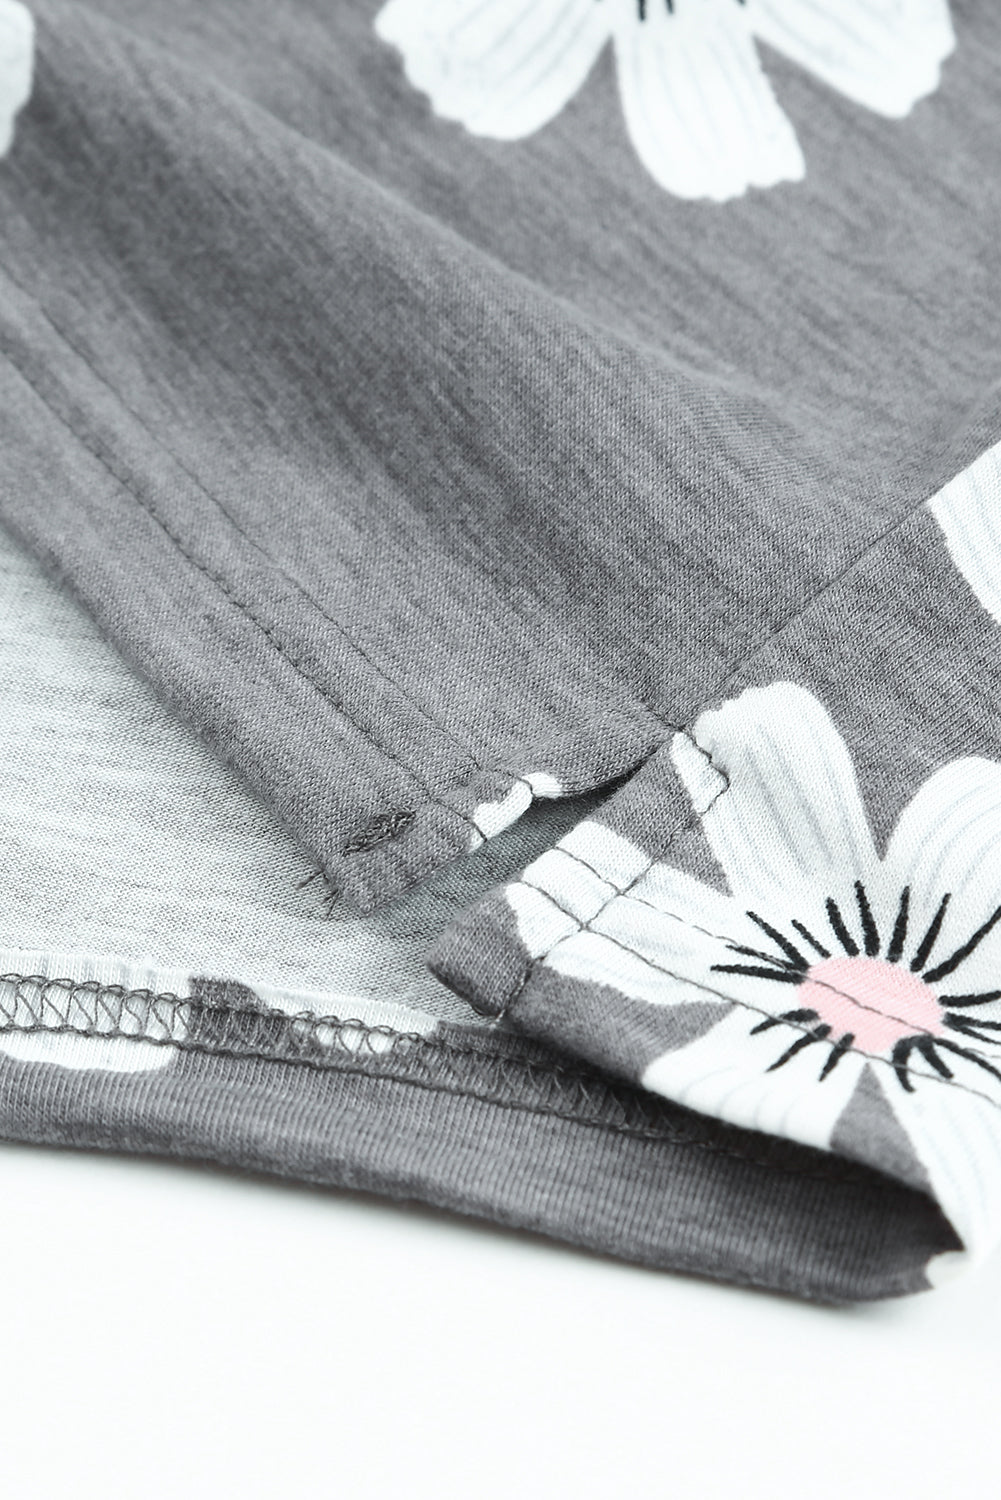 T-shirt grigia con maniche ad aletta floreale e tasca